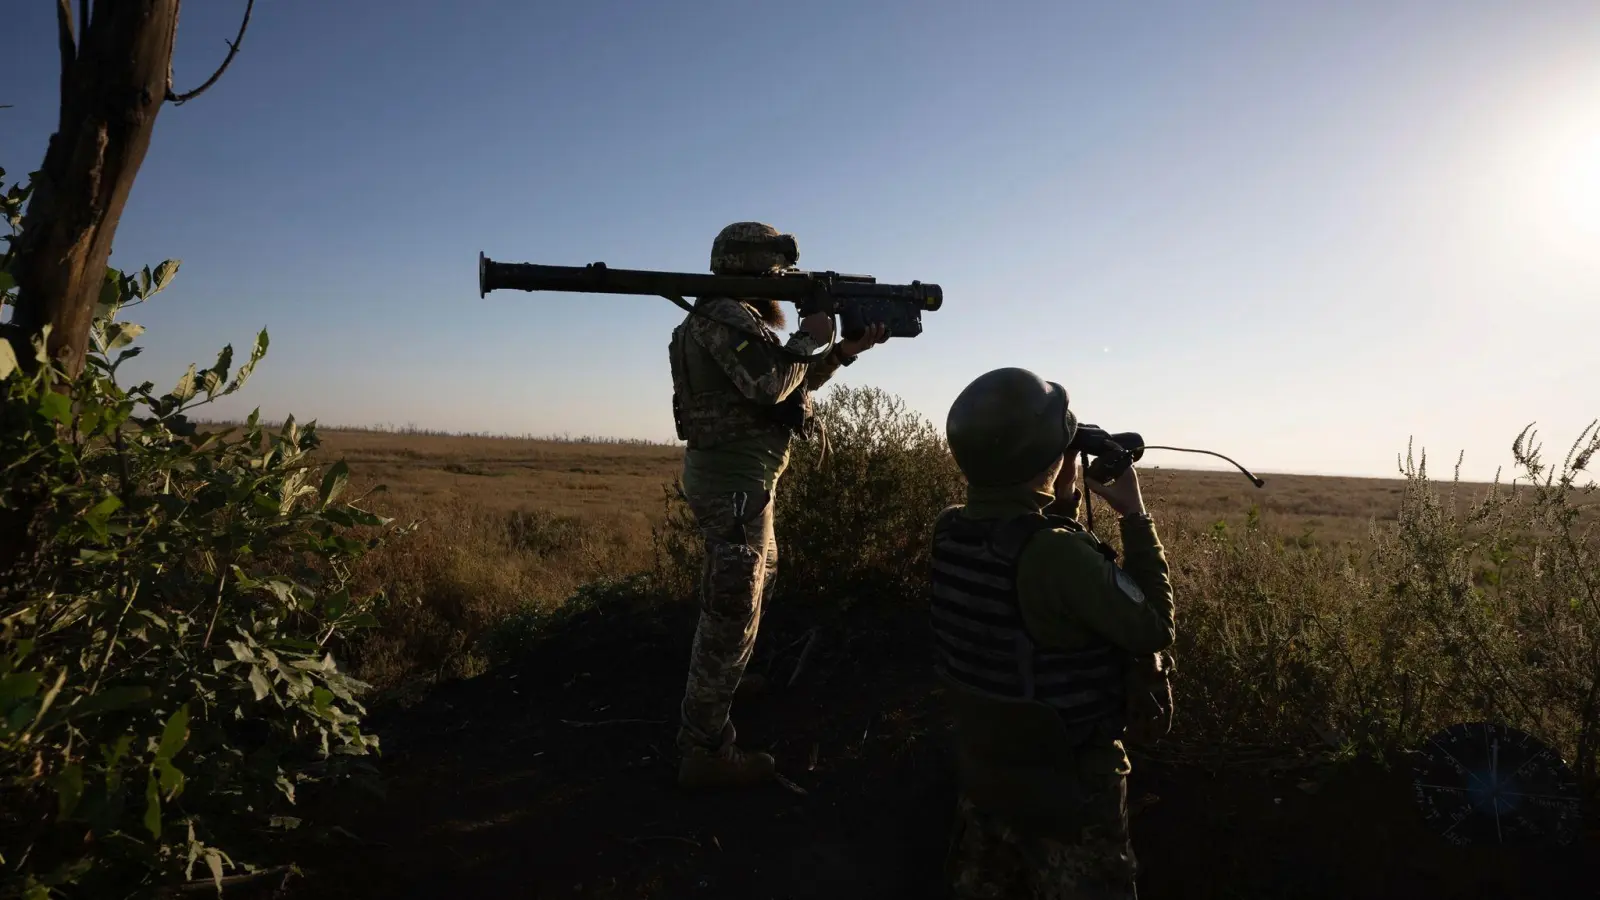 Ukrainische Soldaten zielen mit einer Flugabwehrrakete auf die Frontlinie bei Bachmut. (Foto: Alex Babenko/AP/dpa)